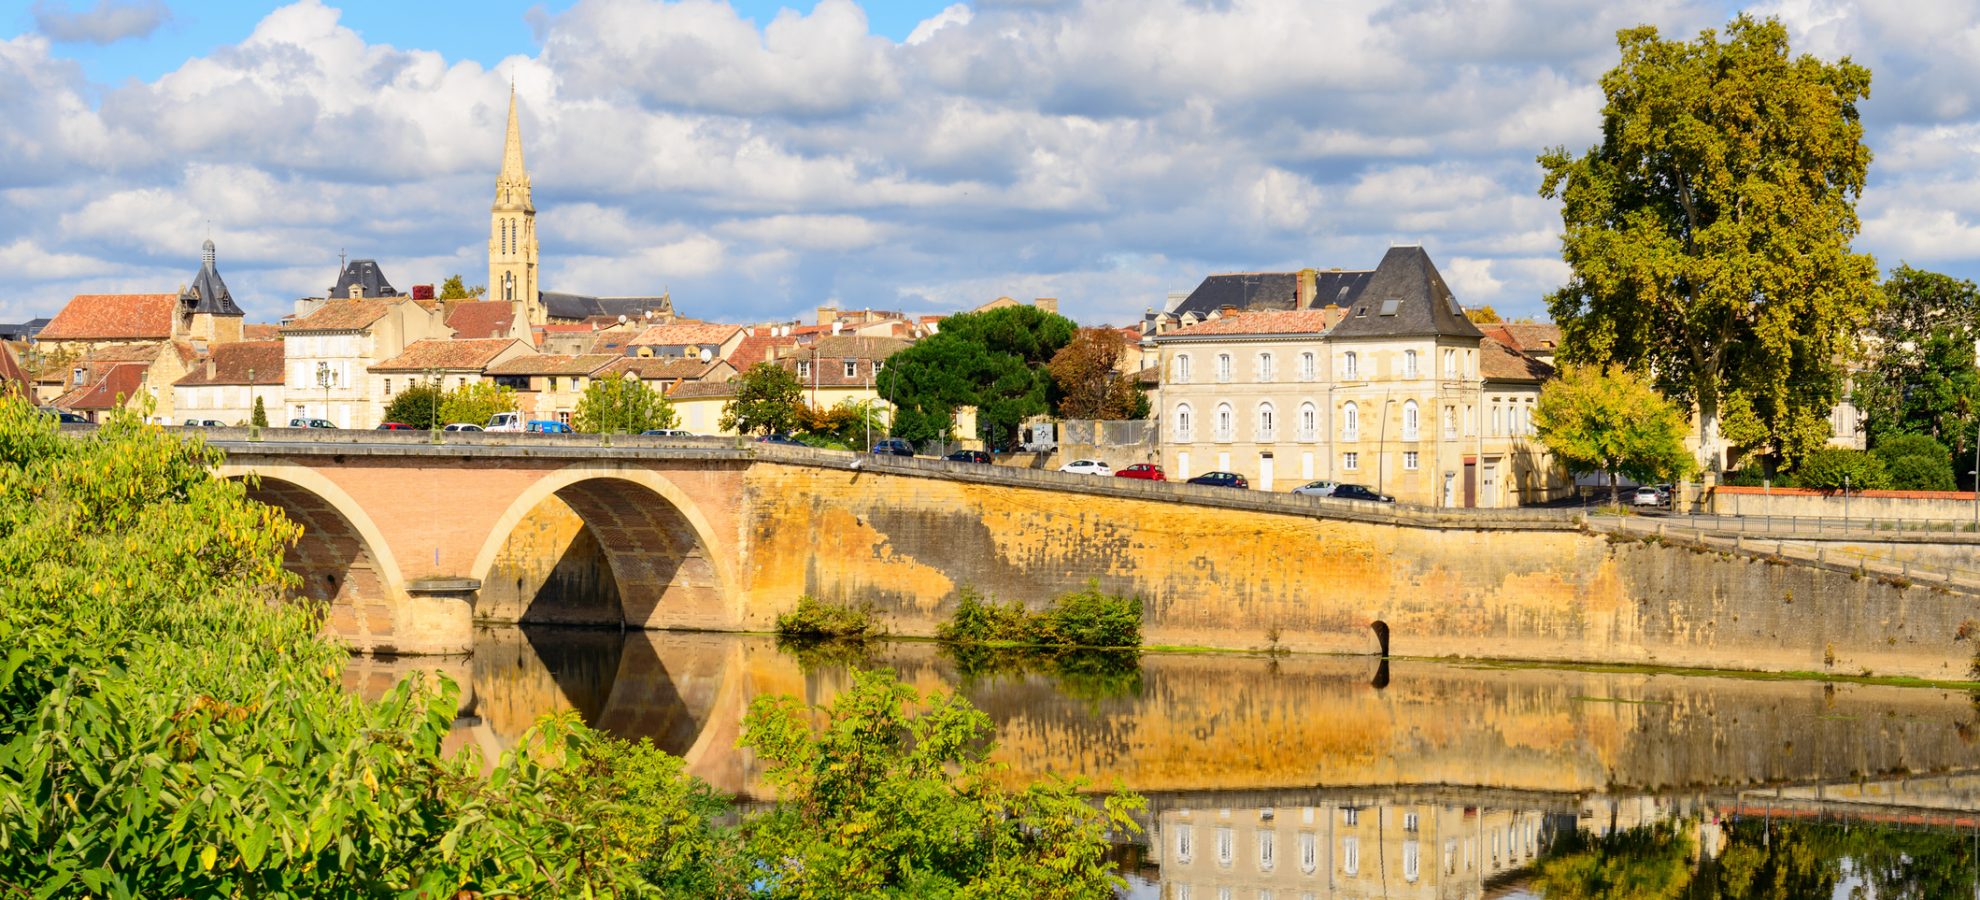 Middeleeuws stadje Bergerac aan de Dordogne rivier